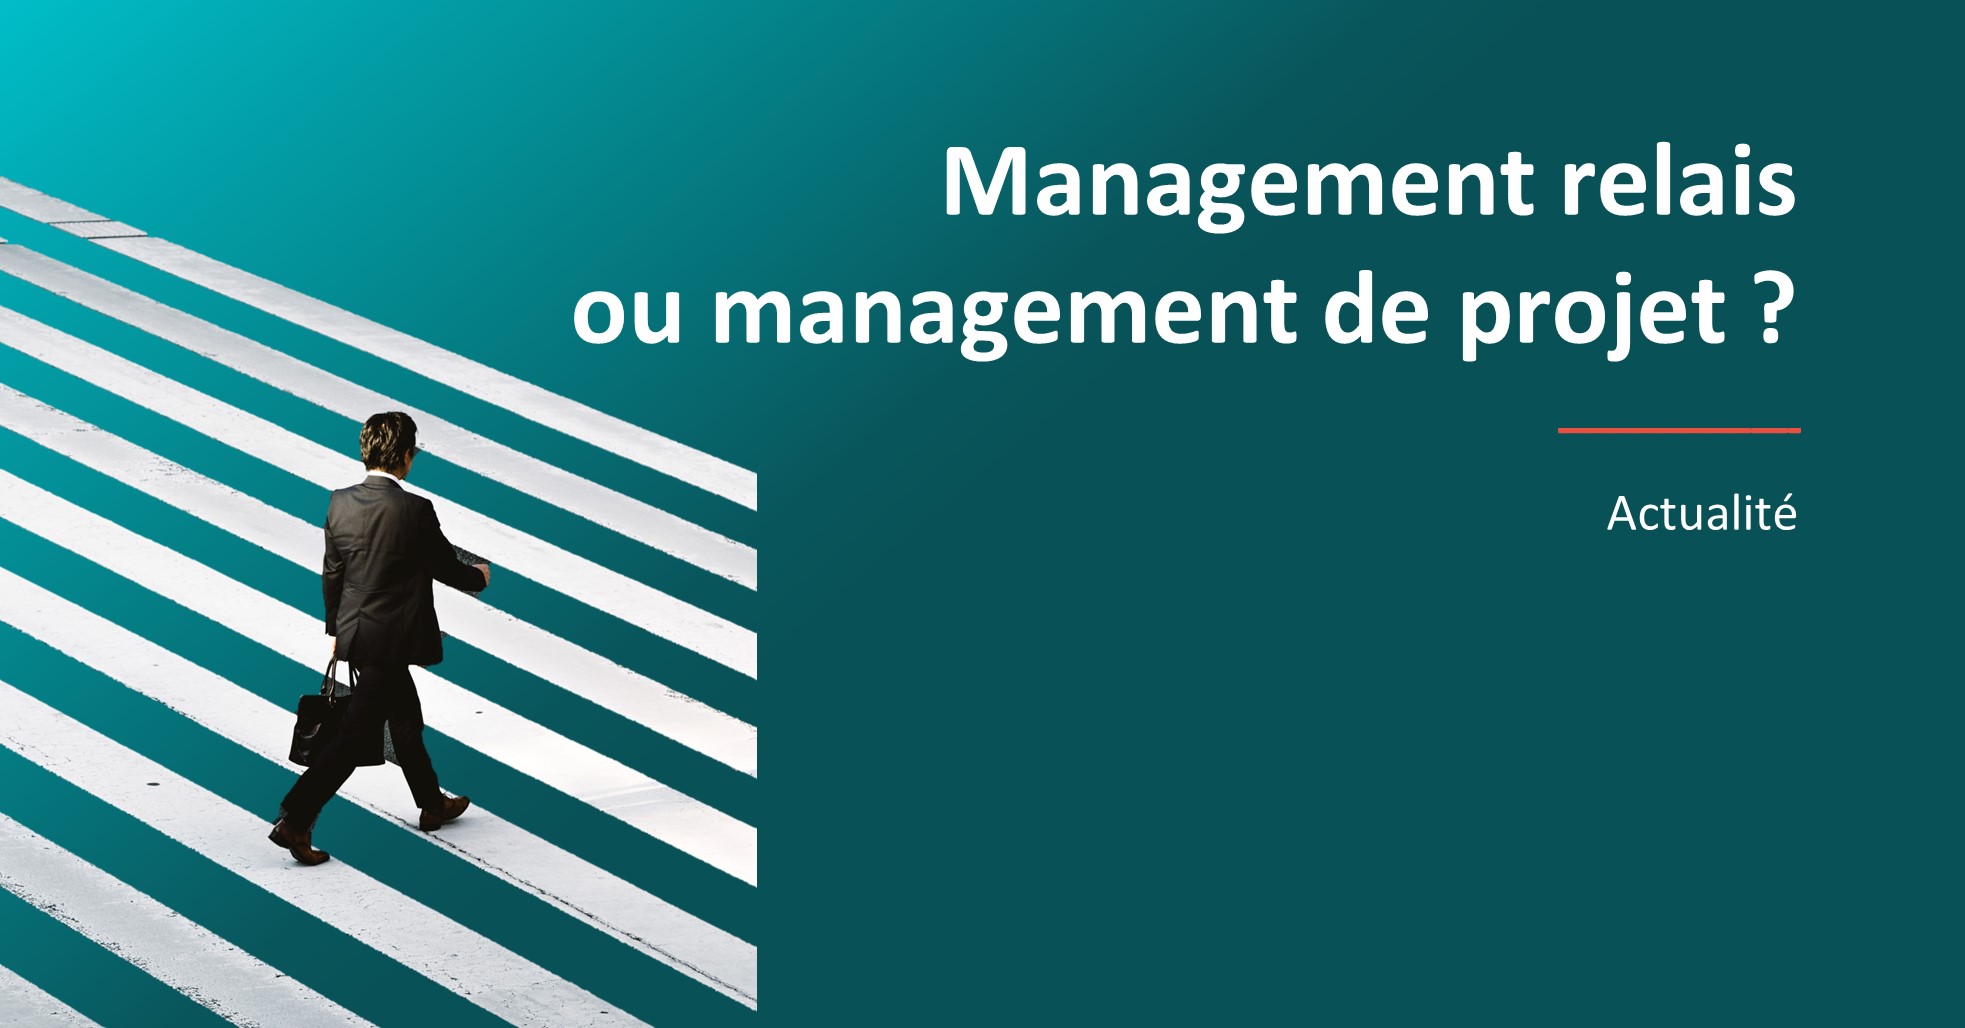 Management de transition : Management projet ou Management relai. Un article pour faire la différence et savoir comment choisir.